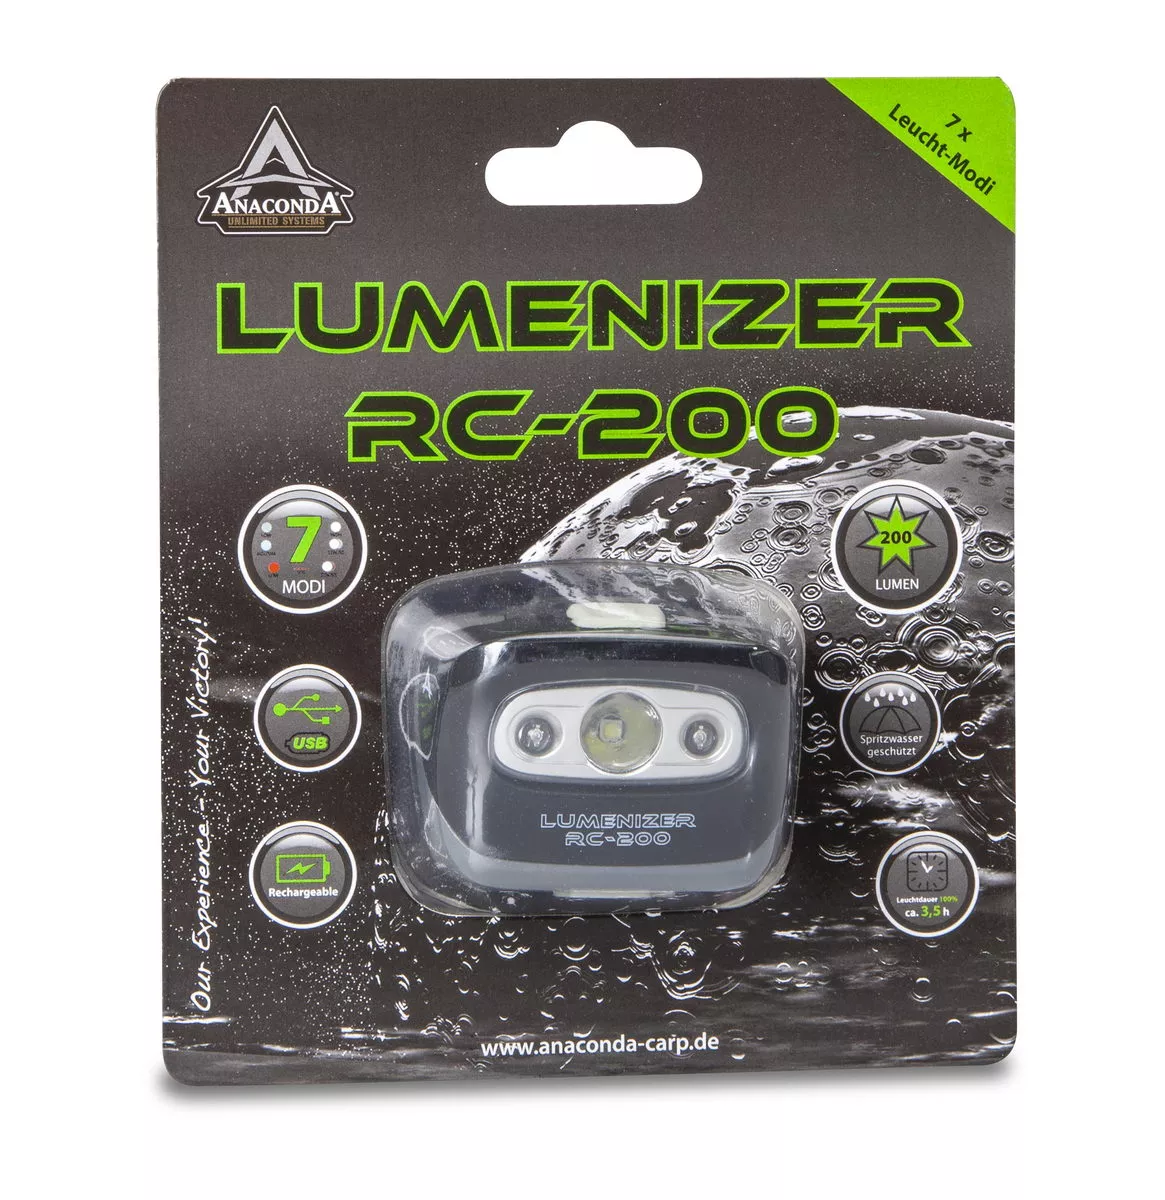 ANACONDA Lumenizer RC-200 Kopflampe mit USB-Anschluß und Akku